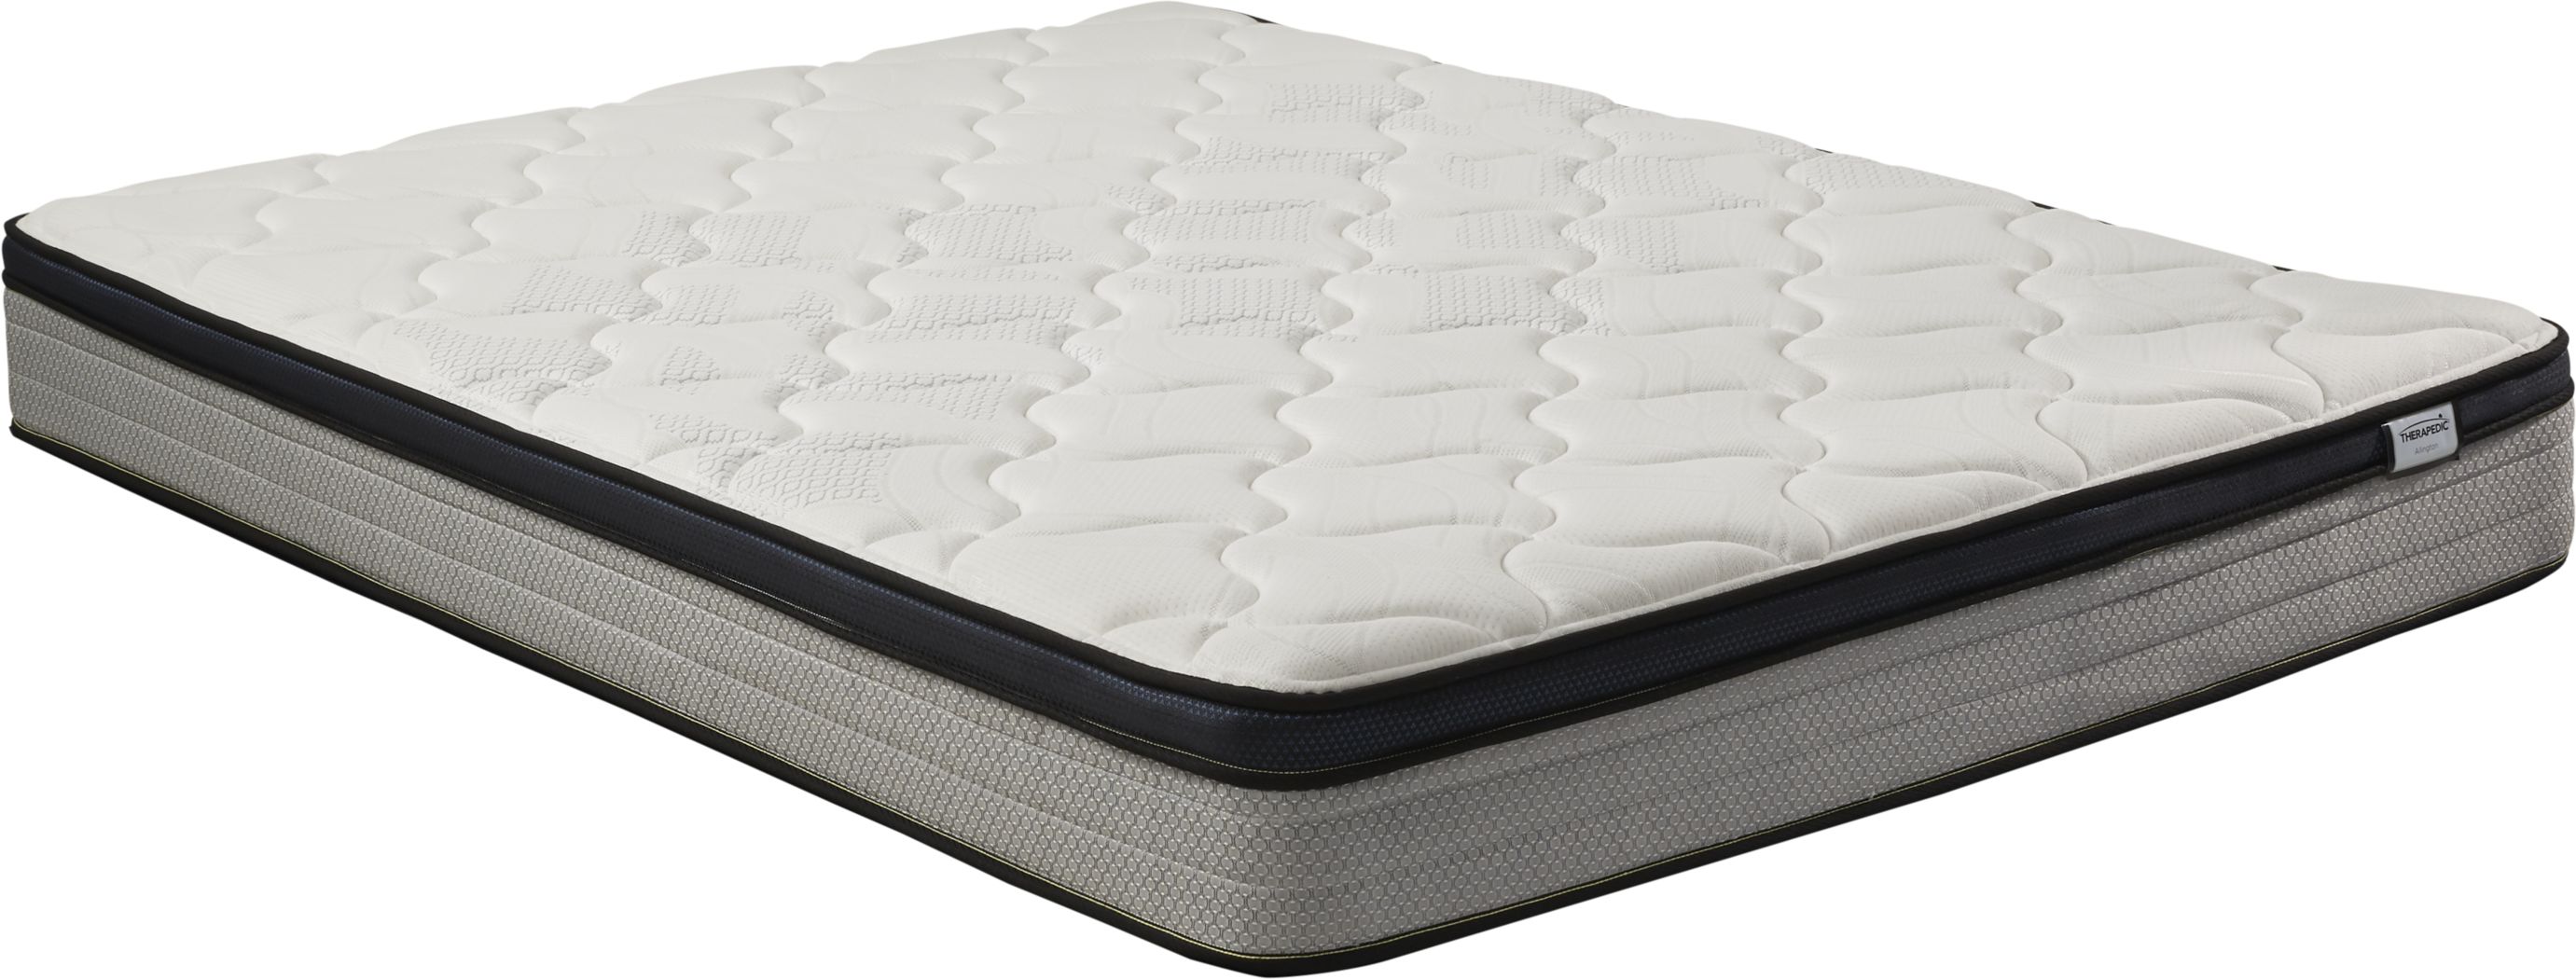 cheap queen size mattress near me